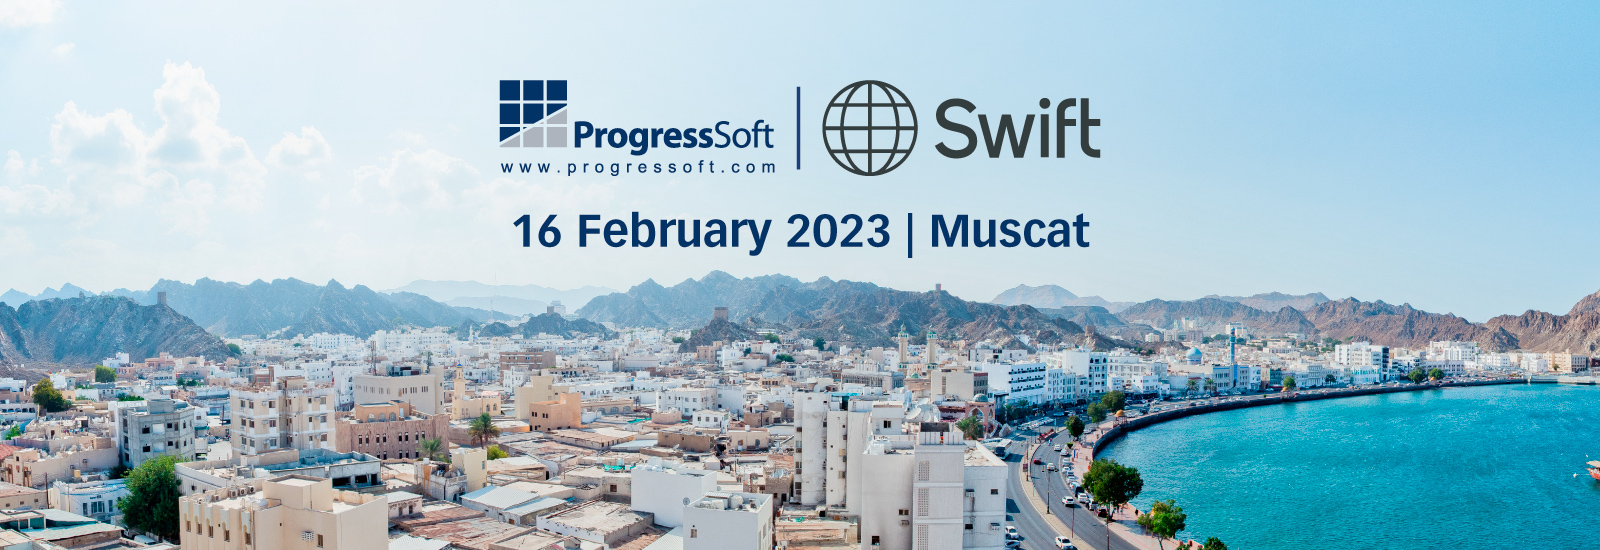 Swift e ProgressSoft: o caminho na direção dos serviços Swift